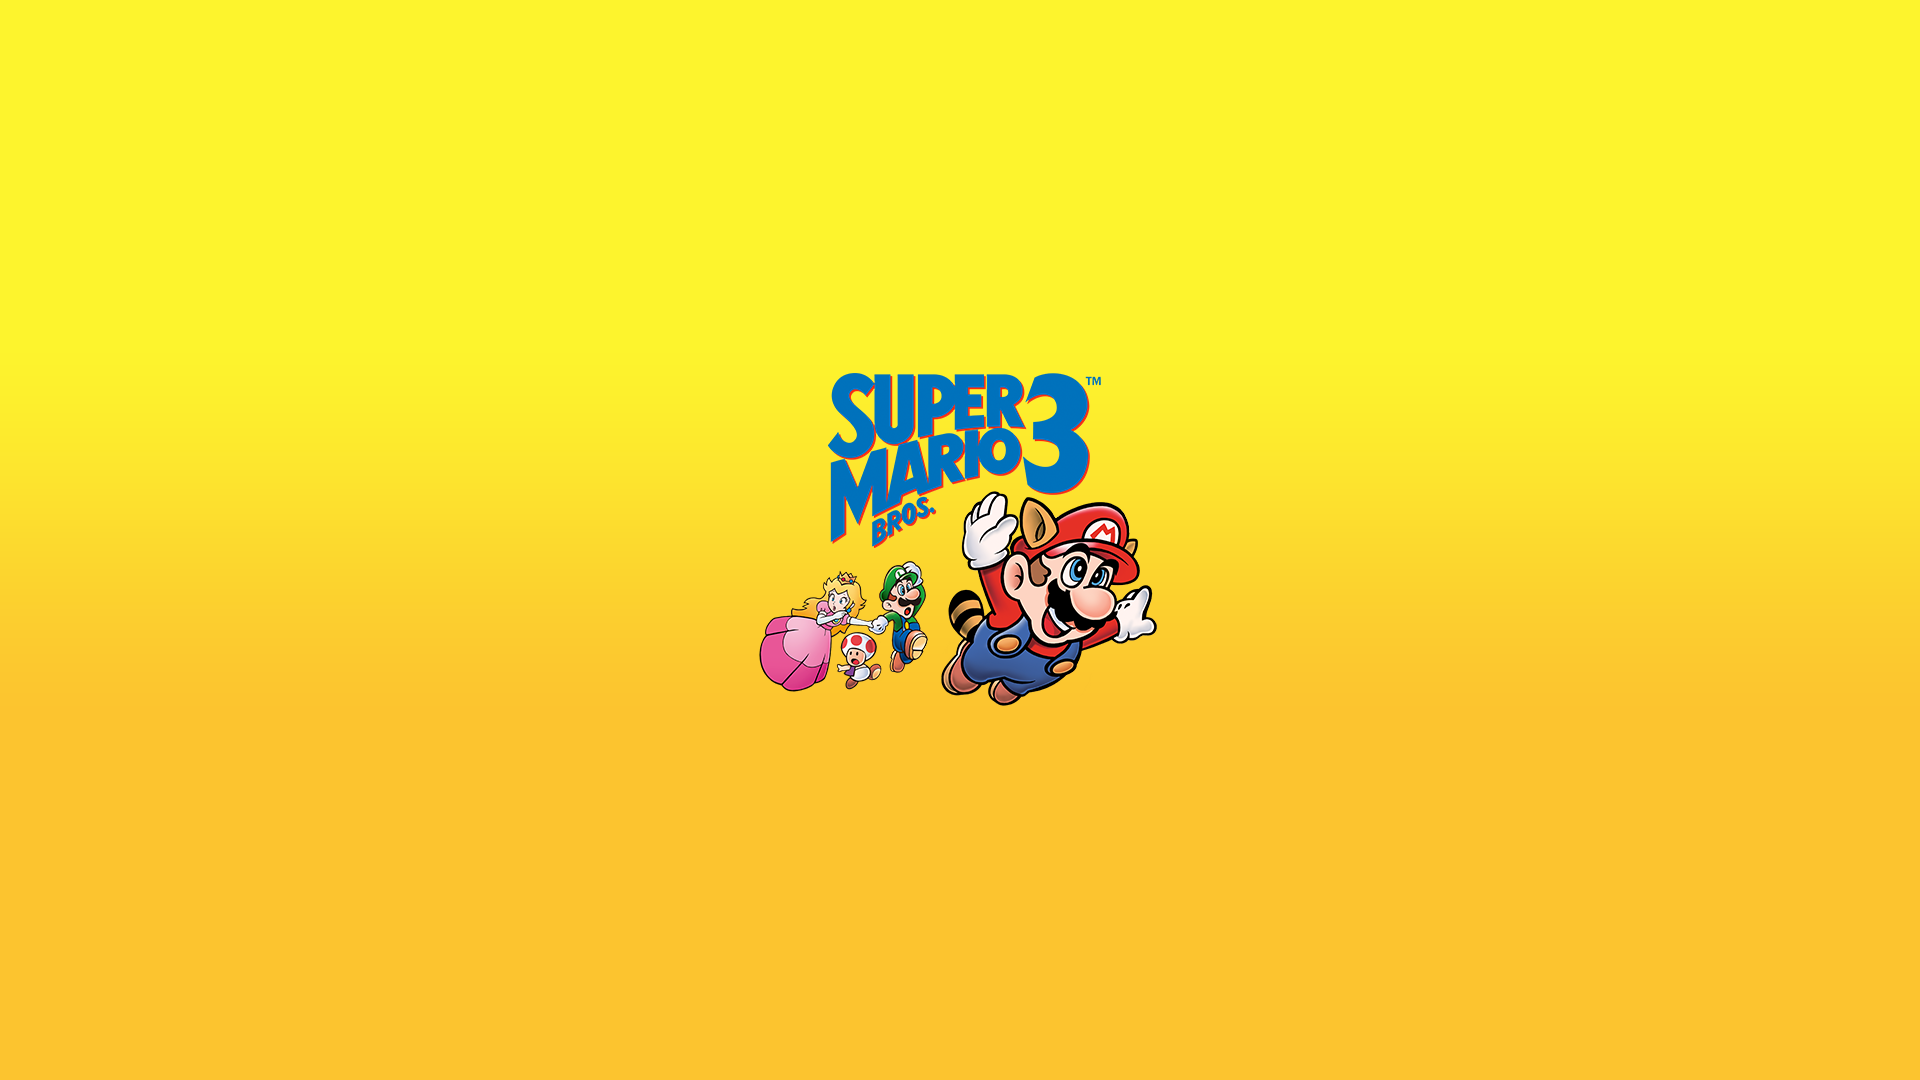 Super Mario Bros 3 by ORANGEMAN80 on DeviantArt